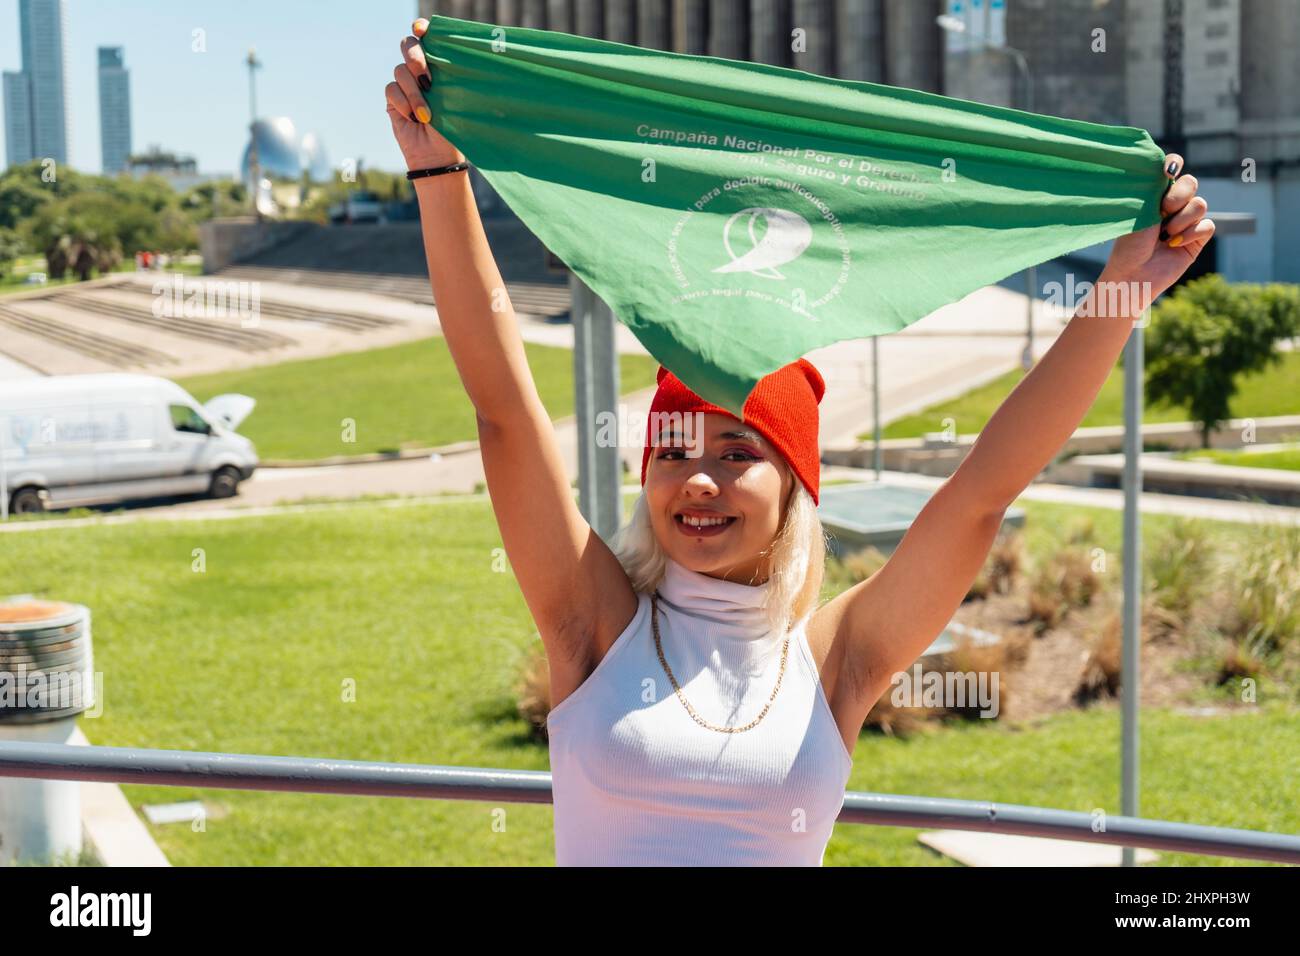 Belle jeune militante qui élève un foulard vert qui symbolise la lutte féministe pour l'égalité et l'avortement légal en Amérique latine. Légal, sûr Banque D'Images